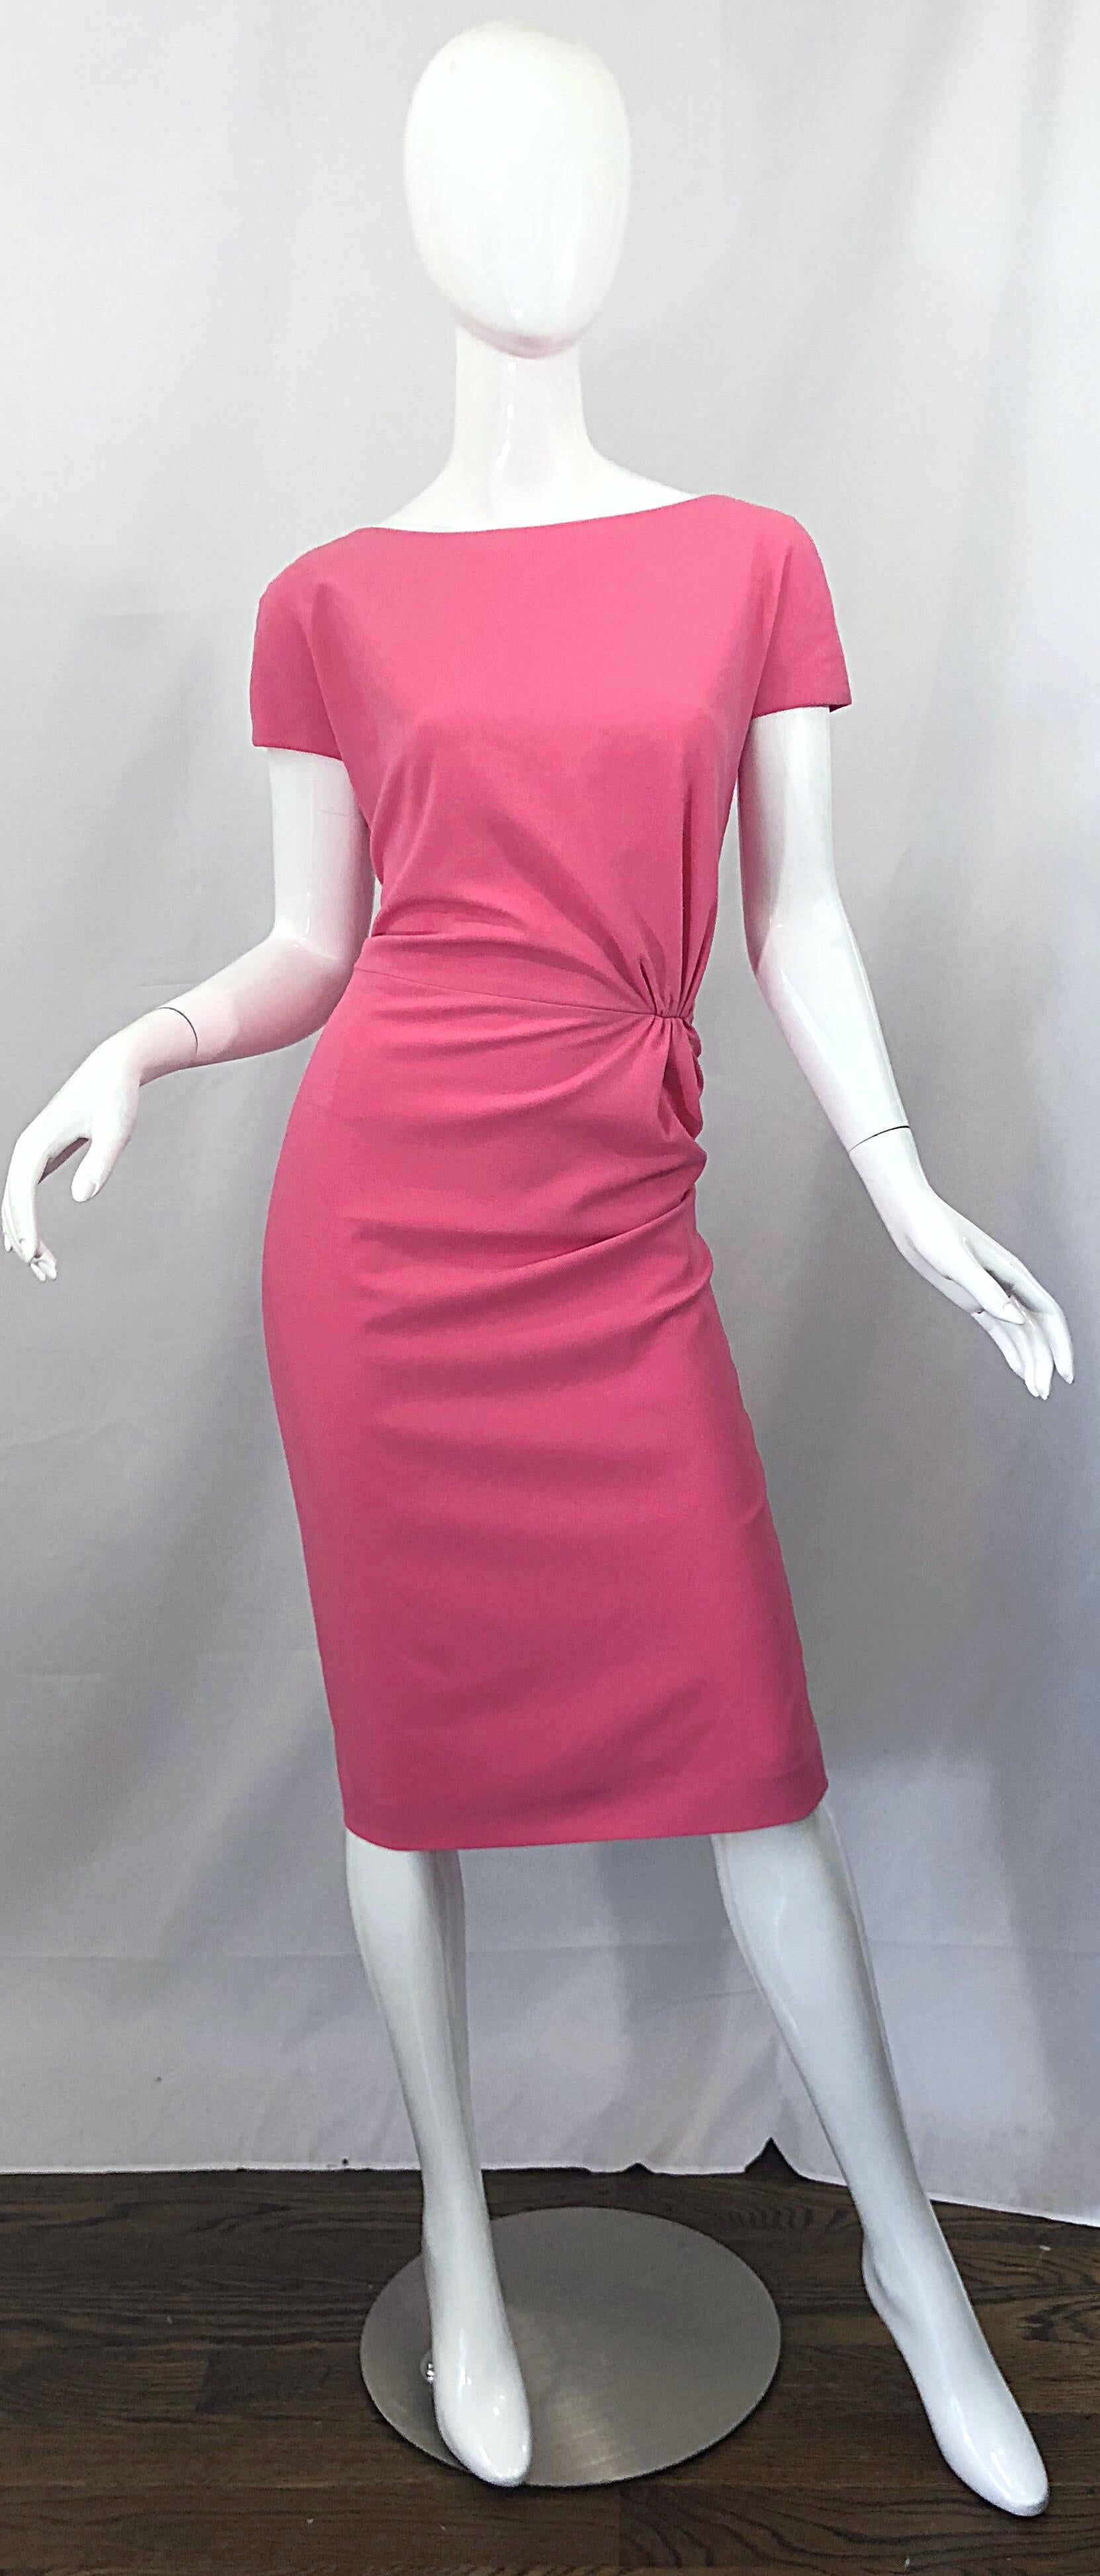 Brandneue Dsquared2 bubblegum rosa kurze Ärmel schmeichelhaftes Kleid! Mit höherem Halsausschnitt und einem Rückenausschnitt, der genau die richtige Menge an Haut zeigt. Schmeichelhafte Raffung an der Taille ist schmeichelhaft und verzeihend